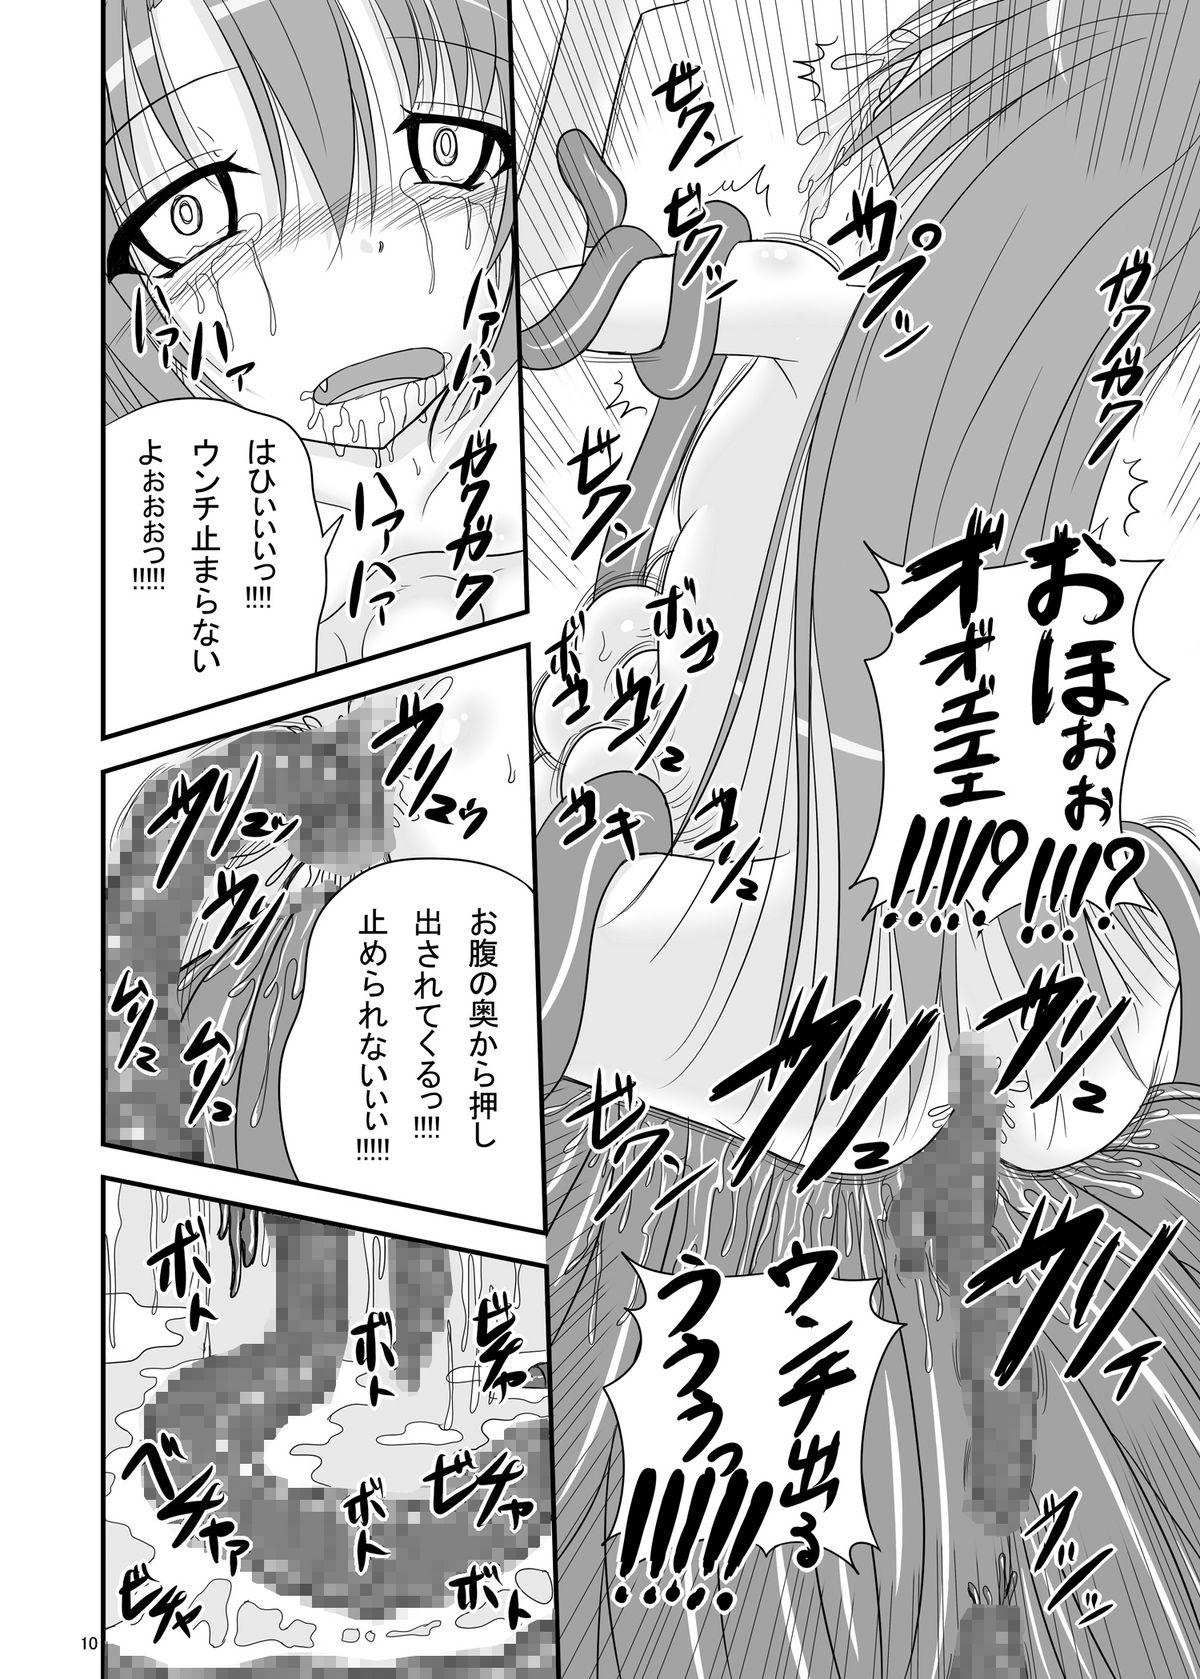 Hogtied Itsuka Zenshin Funsha no Kuso Usagi - Itsuka tenma no kuro usagi Monster - Page 10